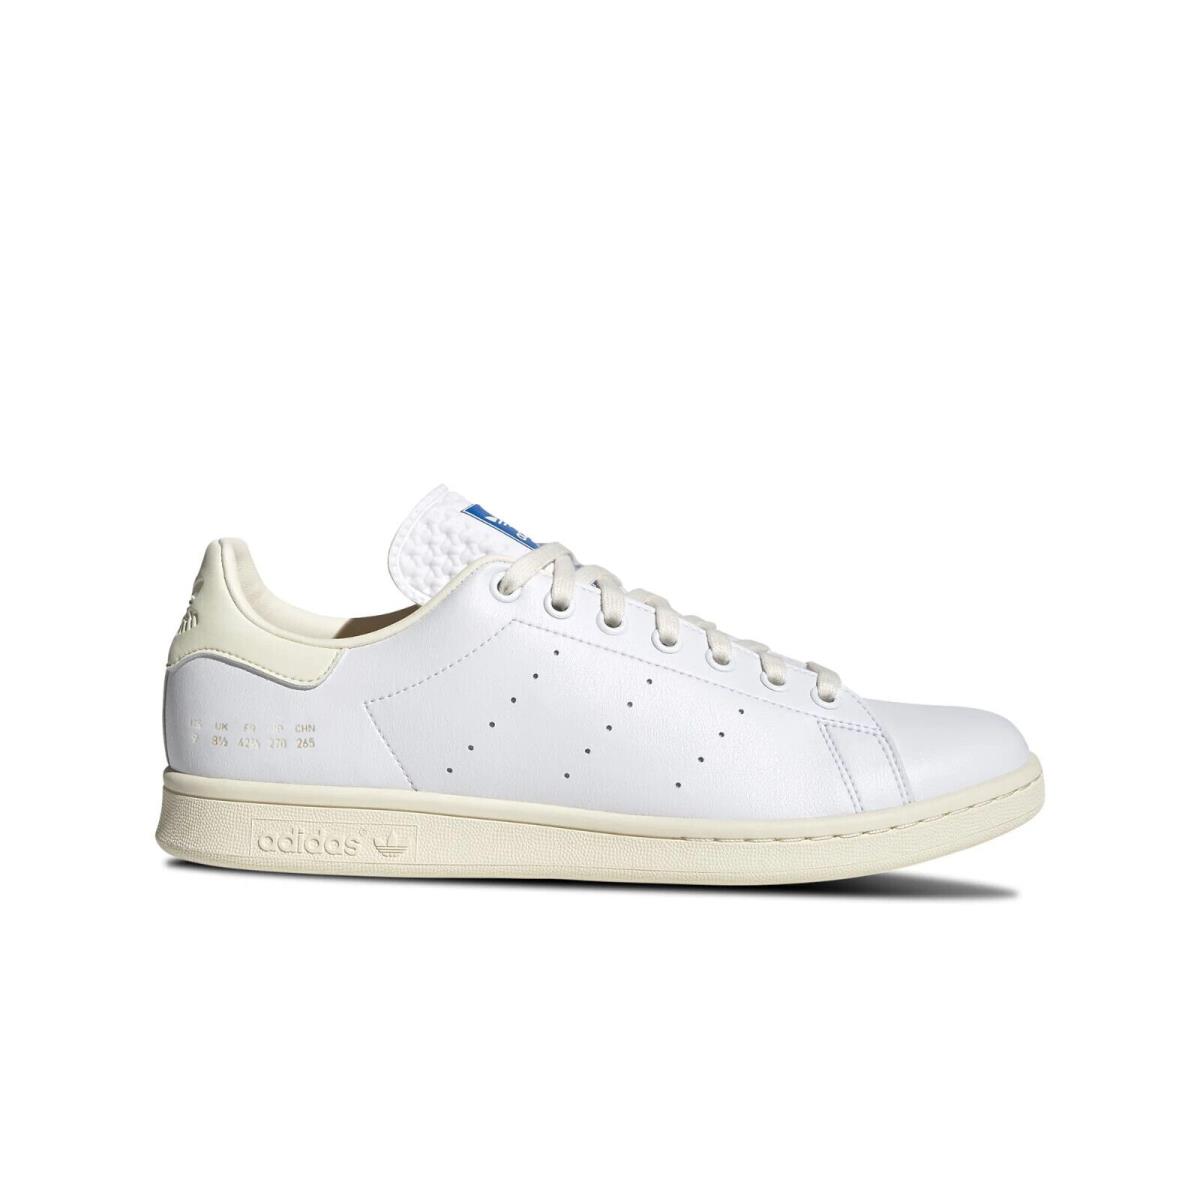 Adidas Men`s Stan Smith White Blue Bird Shoes H05334 Size 8 - White